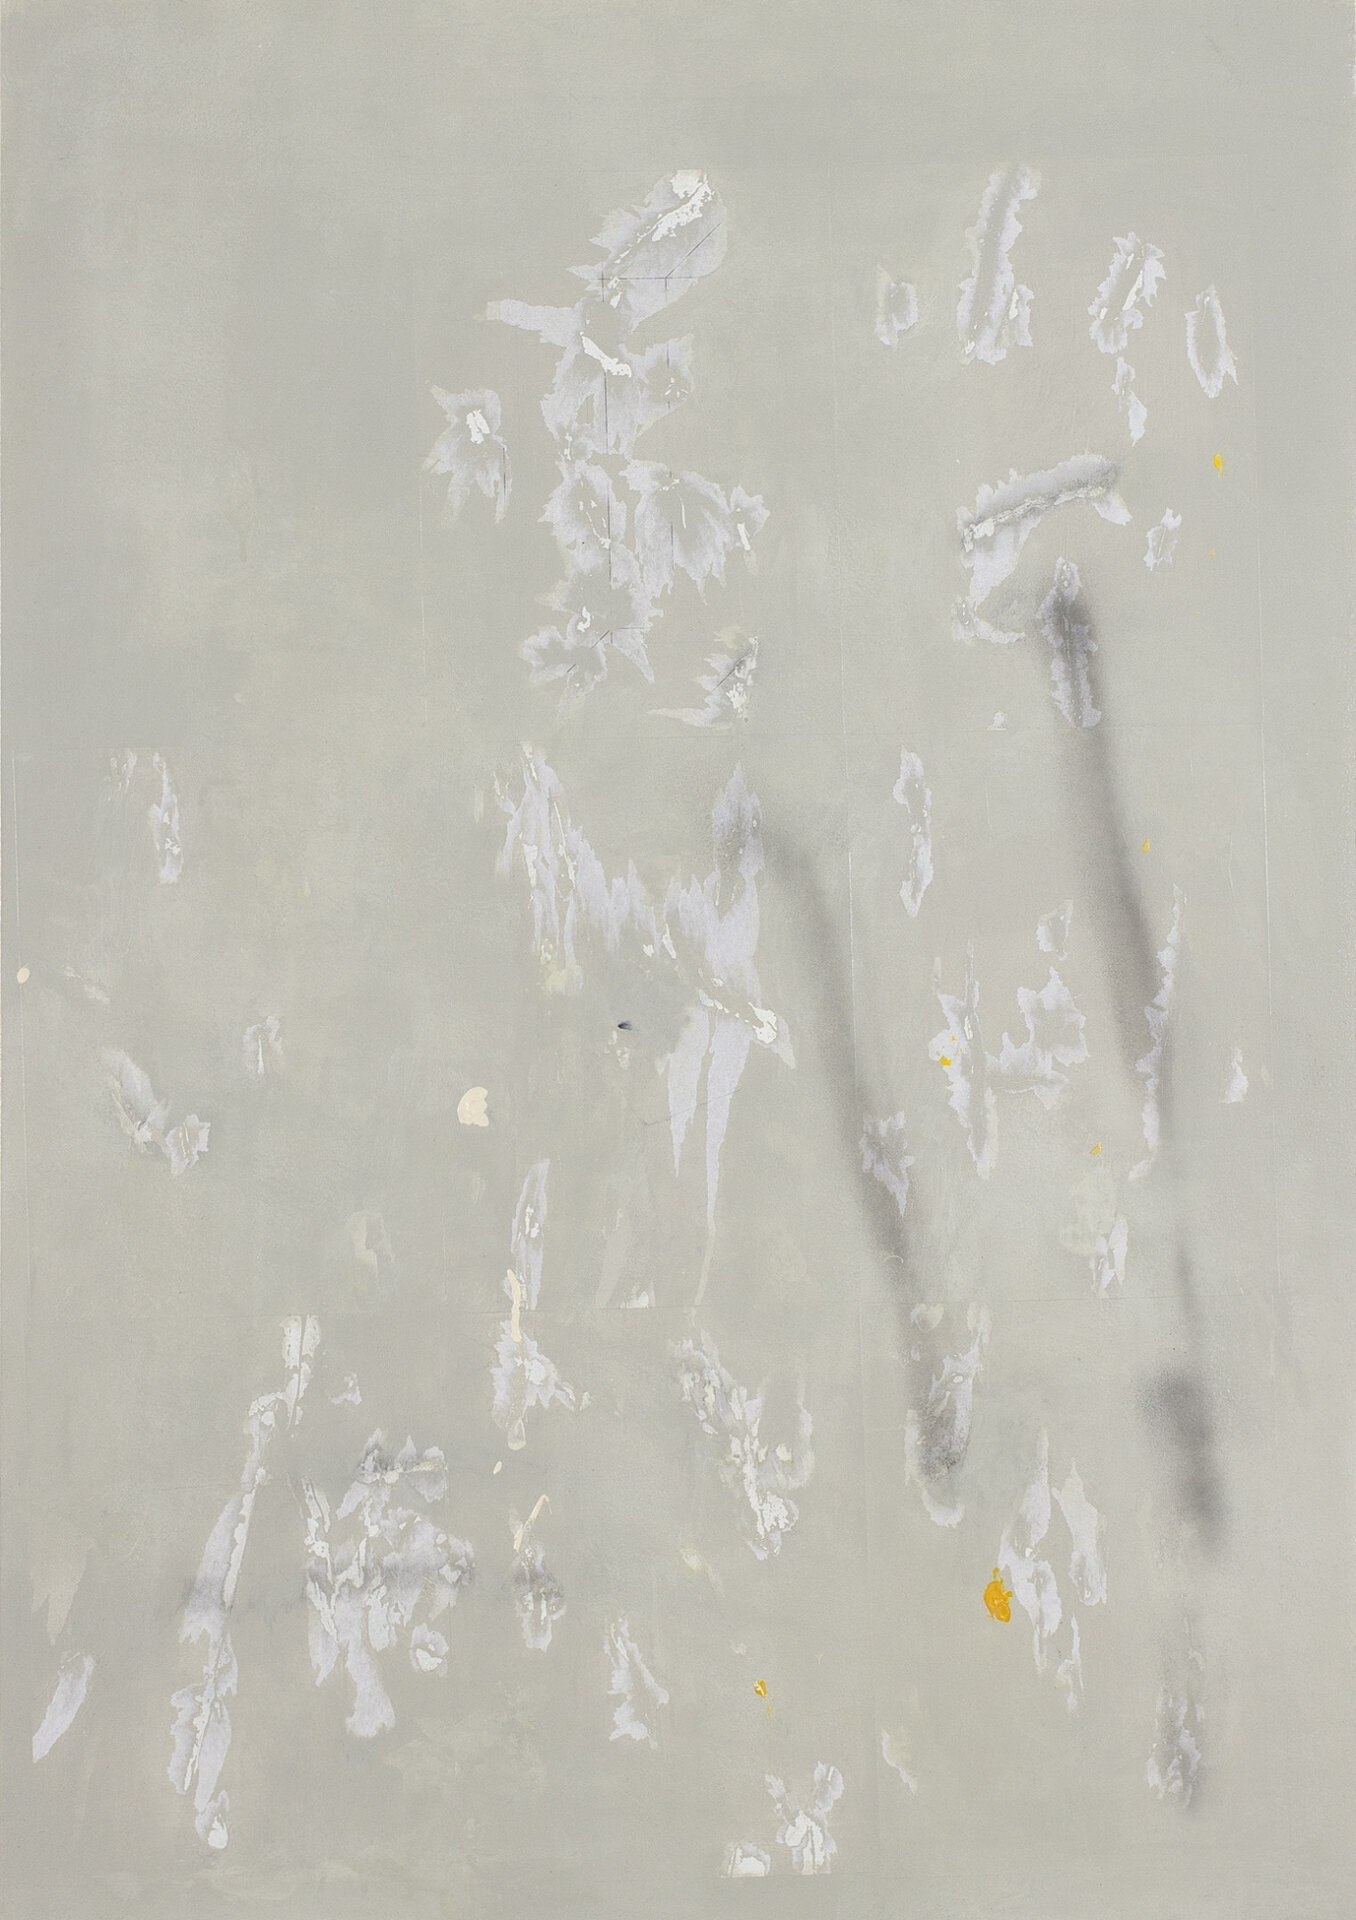 Federico Lissoni, She was an illusion, 2019, acrilico, carta e pittura spray su tela, 100 × 70 cm